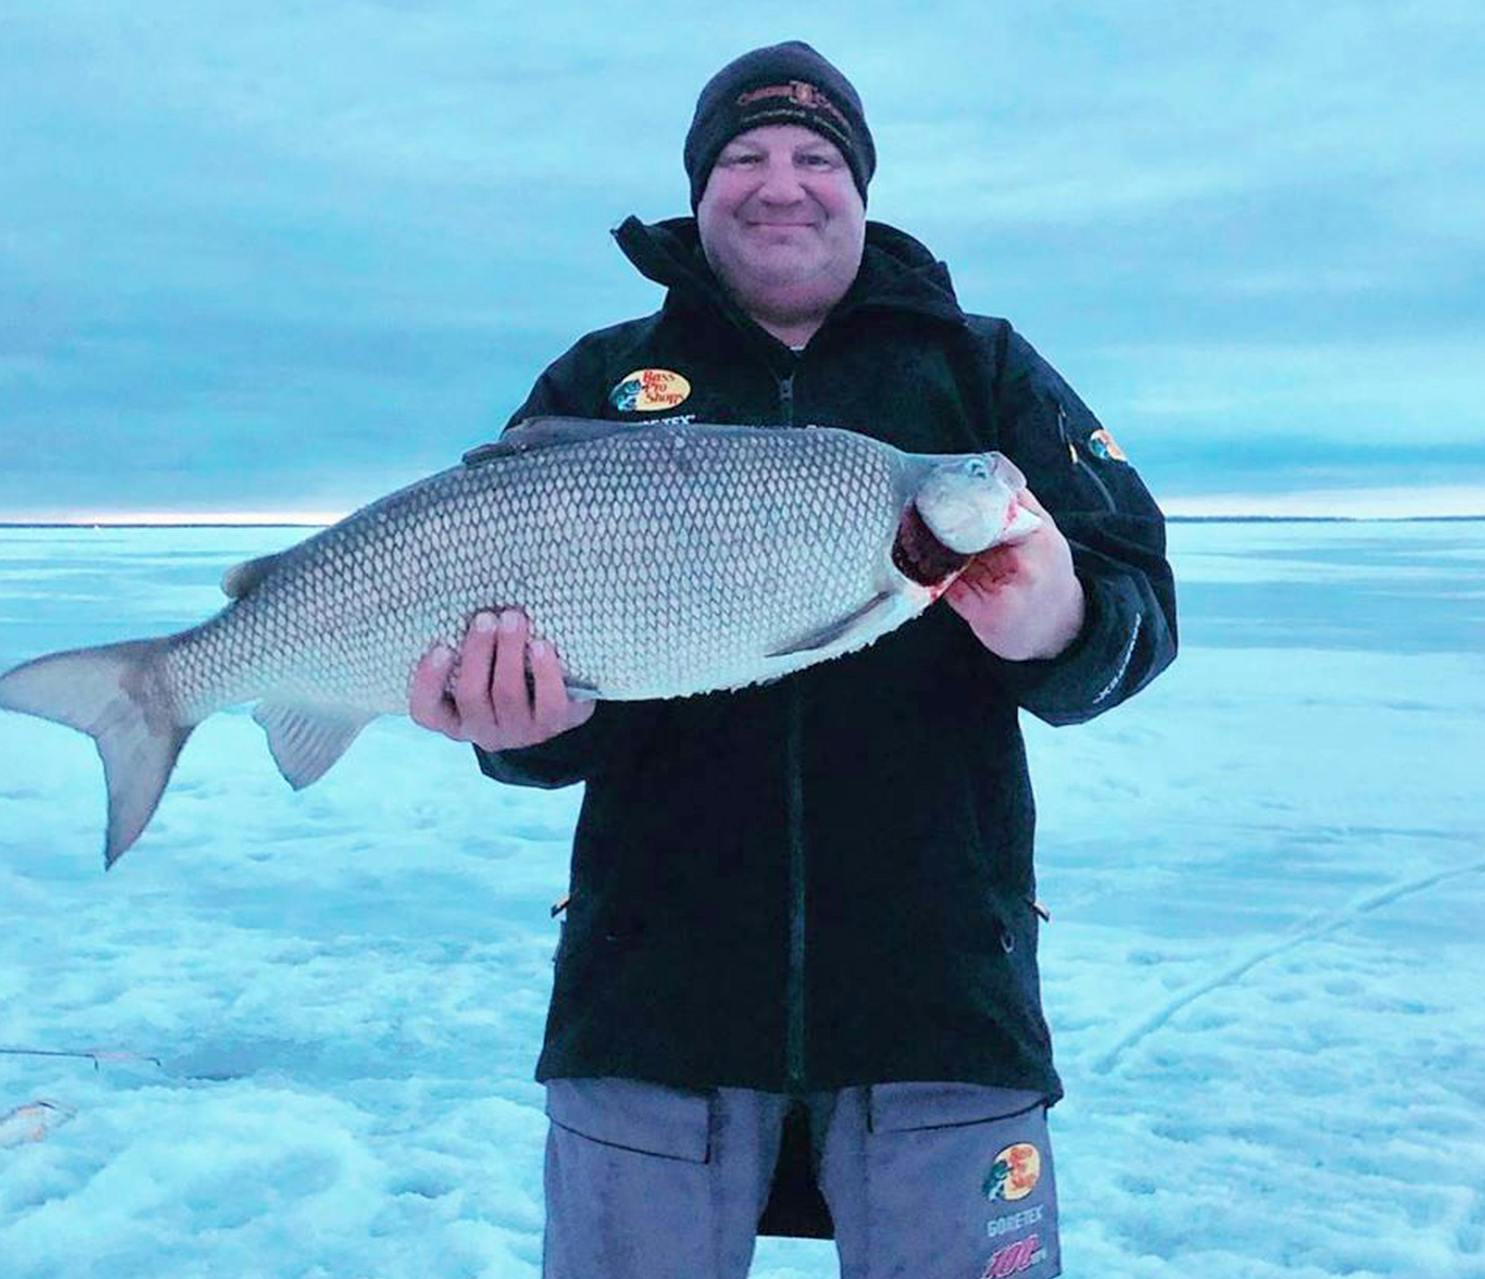 Oklahoma man catches 13-pound-plus whitefish on first ice fishing trip